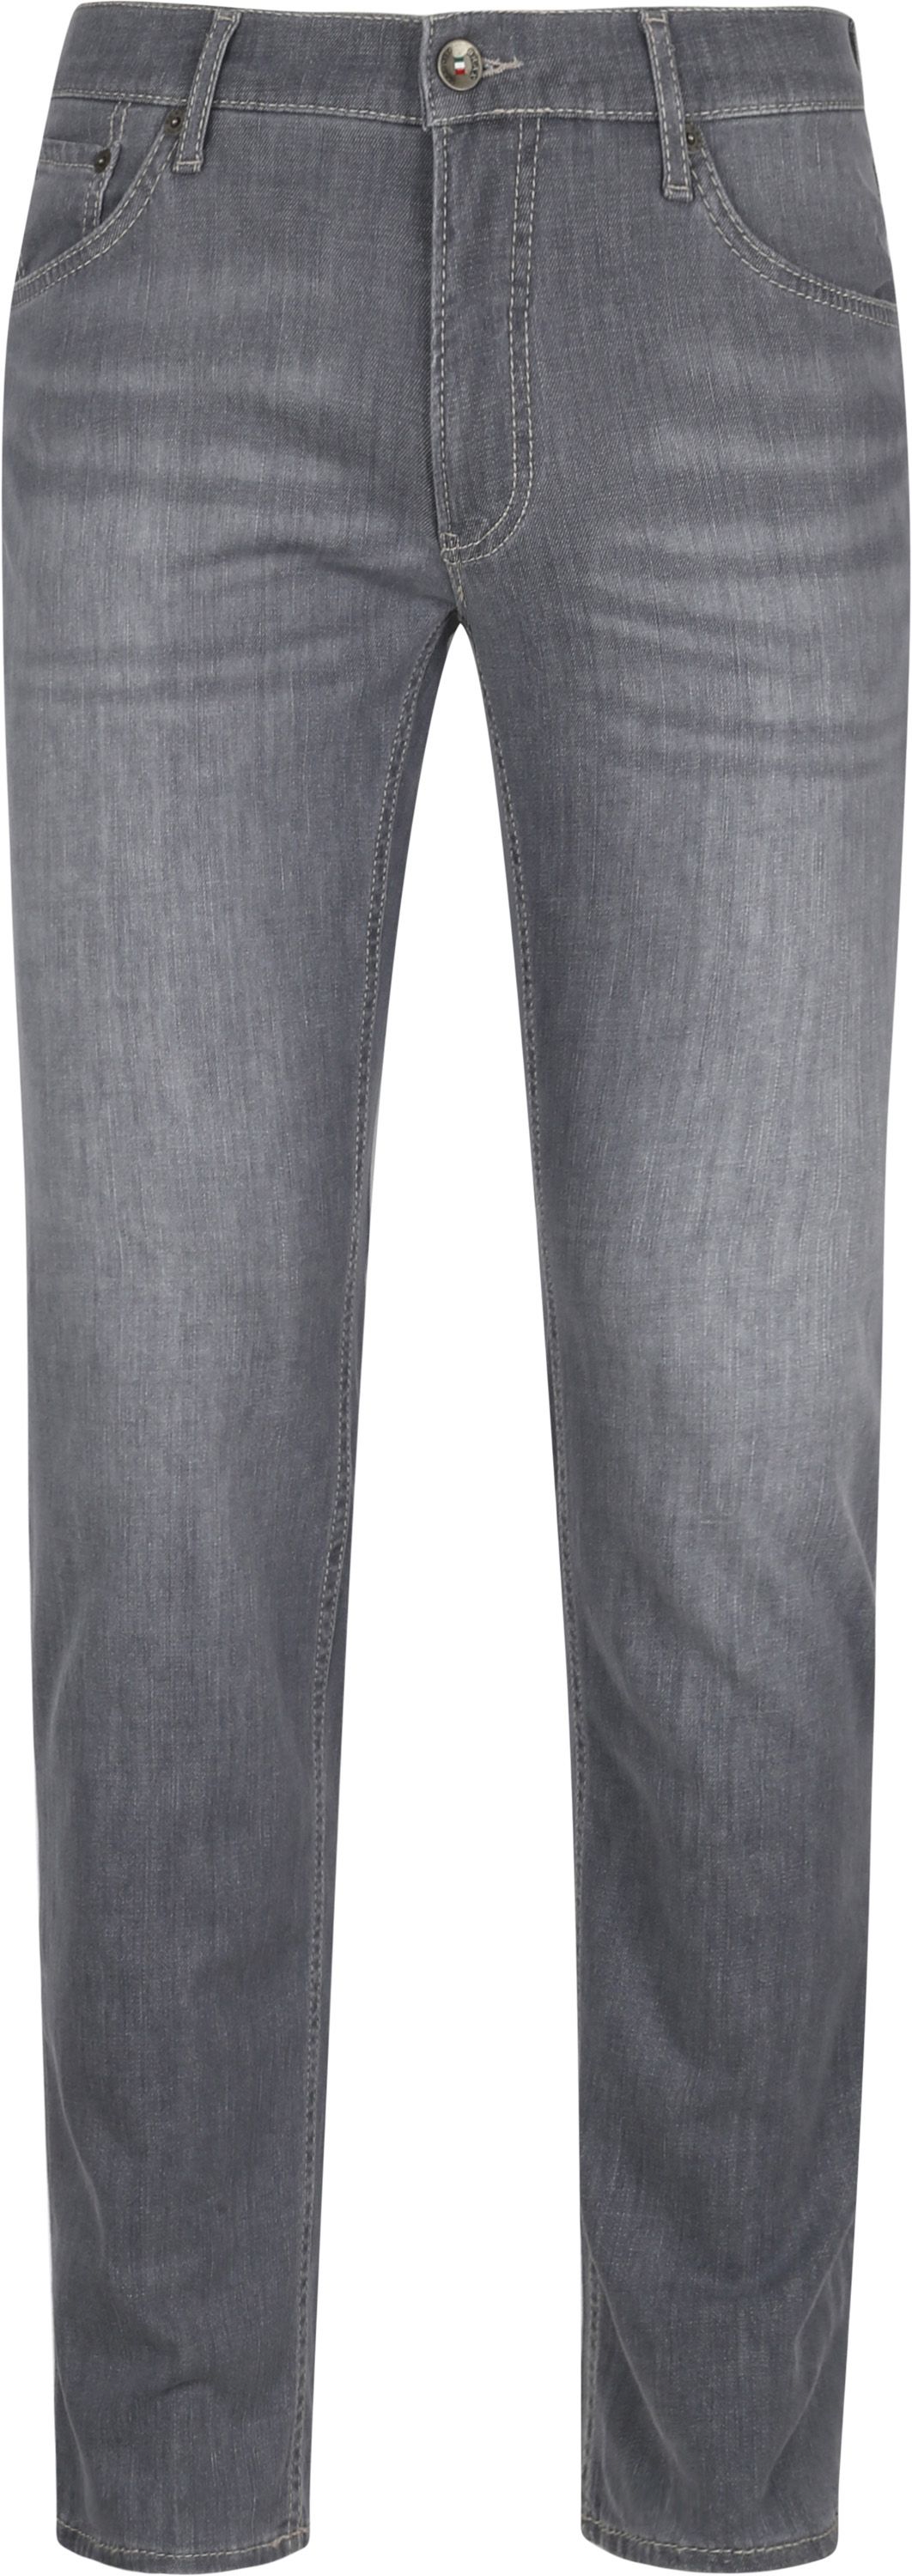 Brax Chuck Denim Jeans Gray Grey size W 30